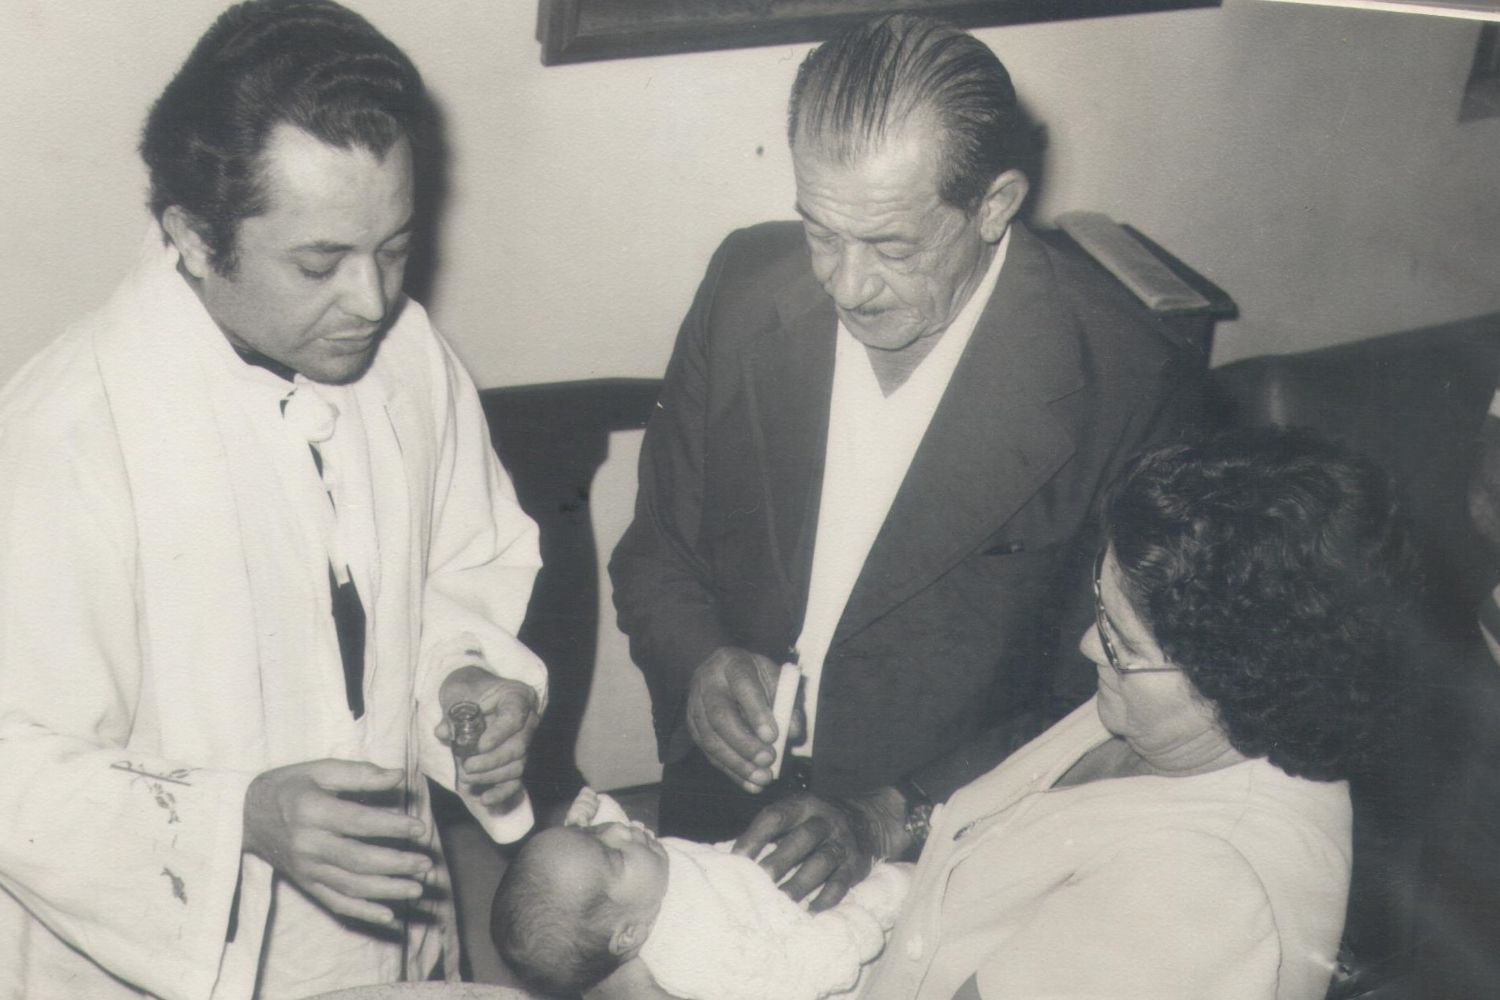 Pe Agnaldo batizando a neta do Sr Antonio Francisco de Lima e D. Olga C. de Lima em 1975